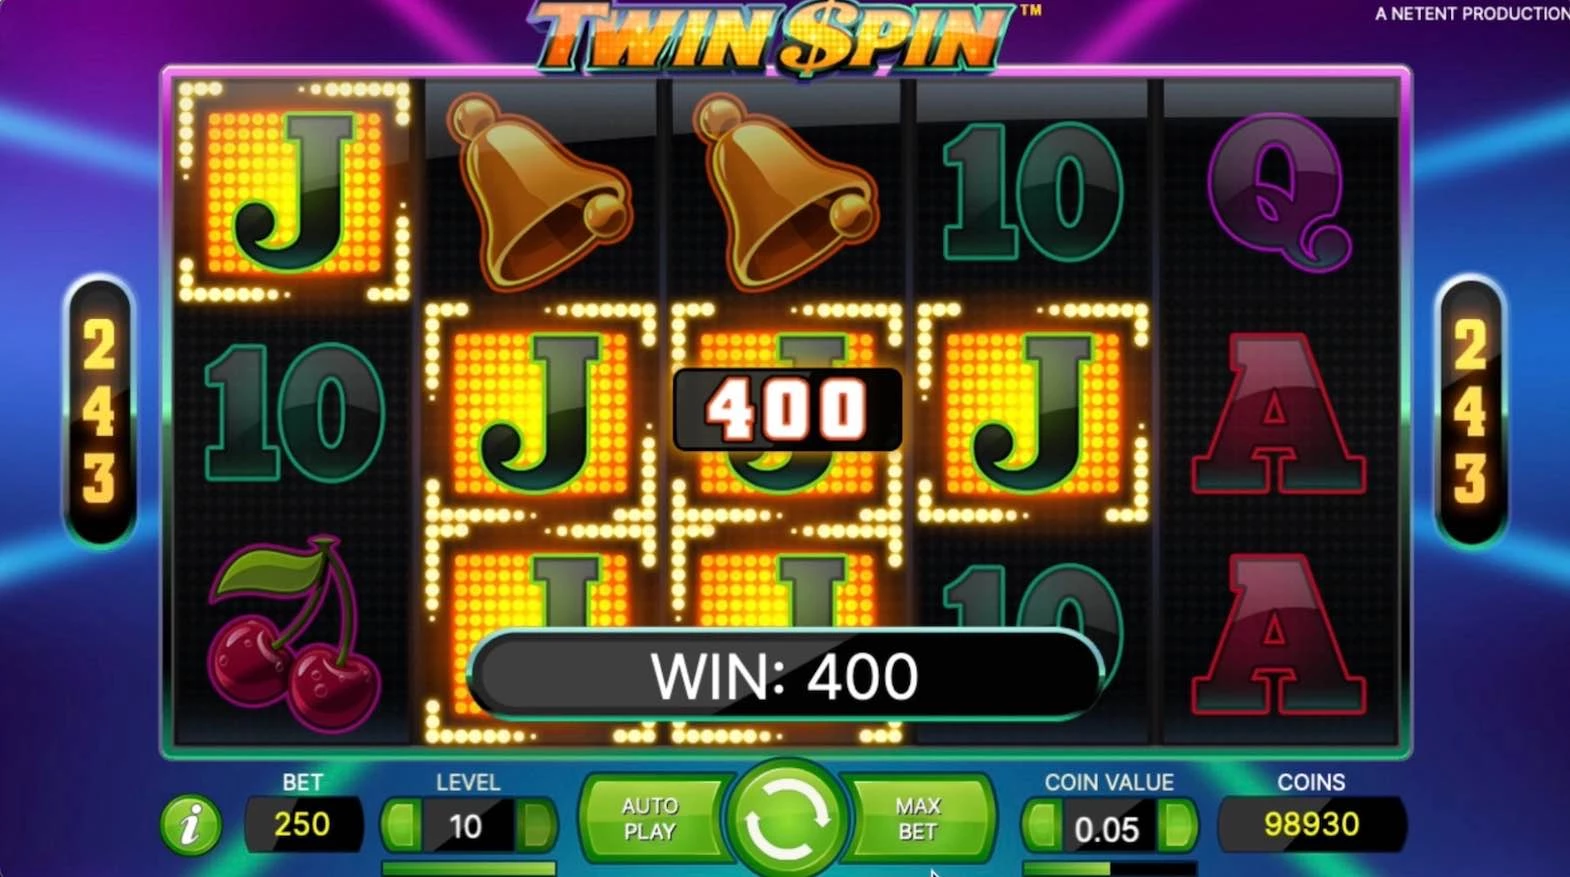 Twin Spin Slot by NetEnt - Jacks Won $400